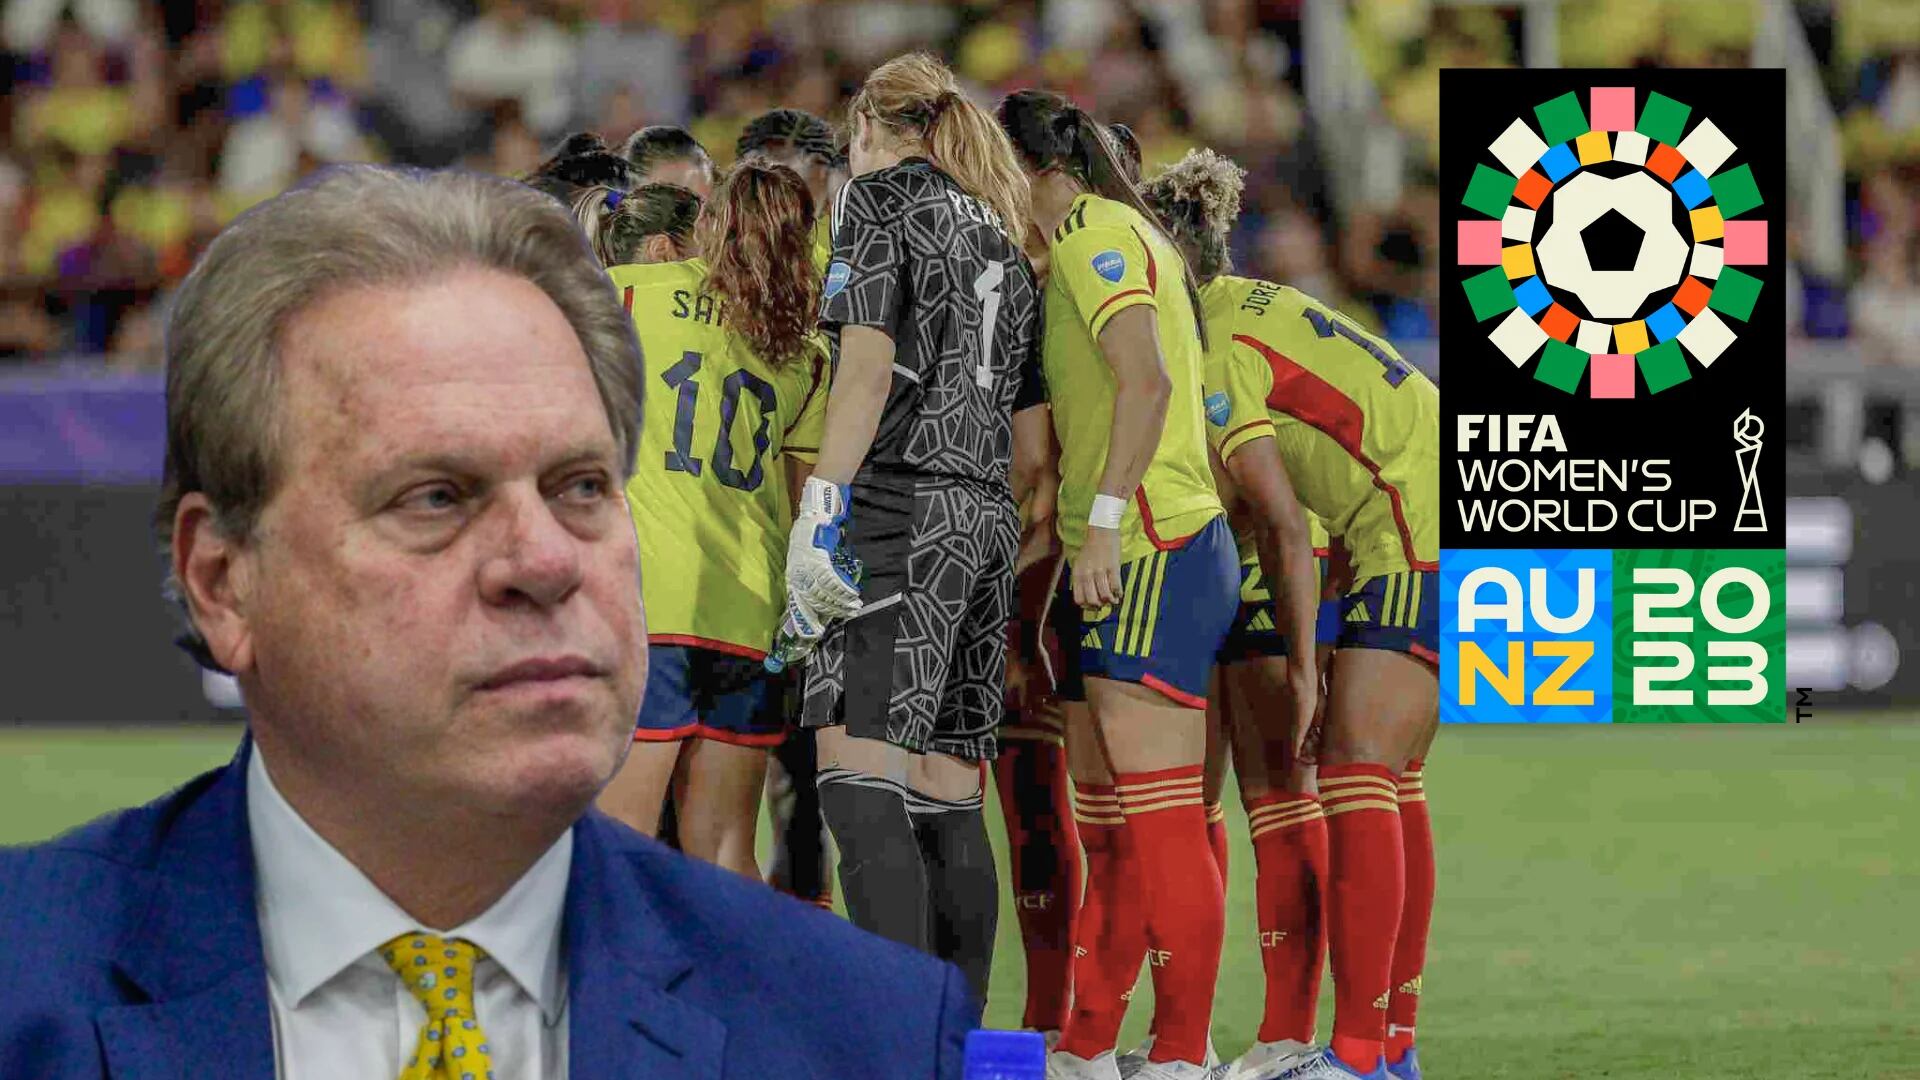 La FIFA “embolató” los premios del Mundial femenino: la Federación Colombiana de Fútbol confirmó que se pagarán en su totalidad